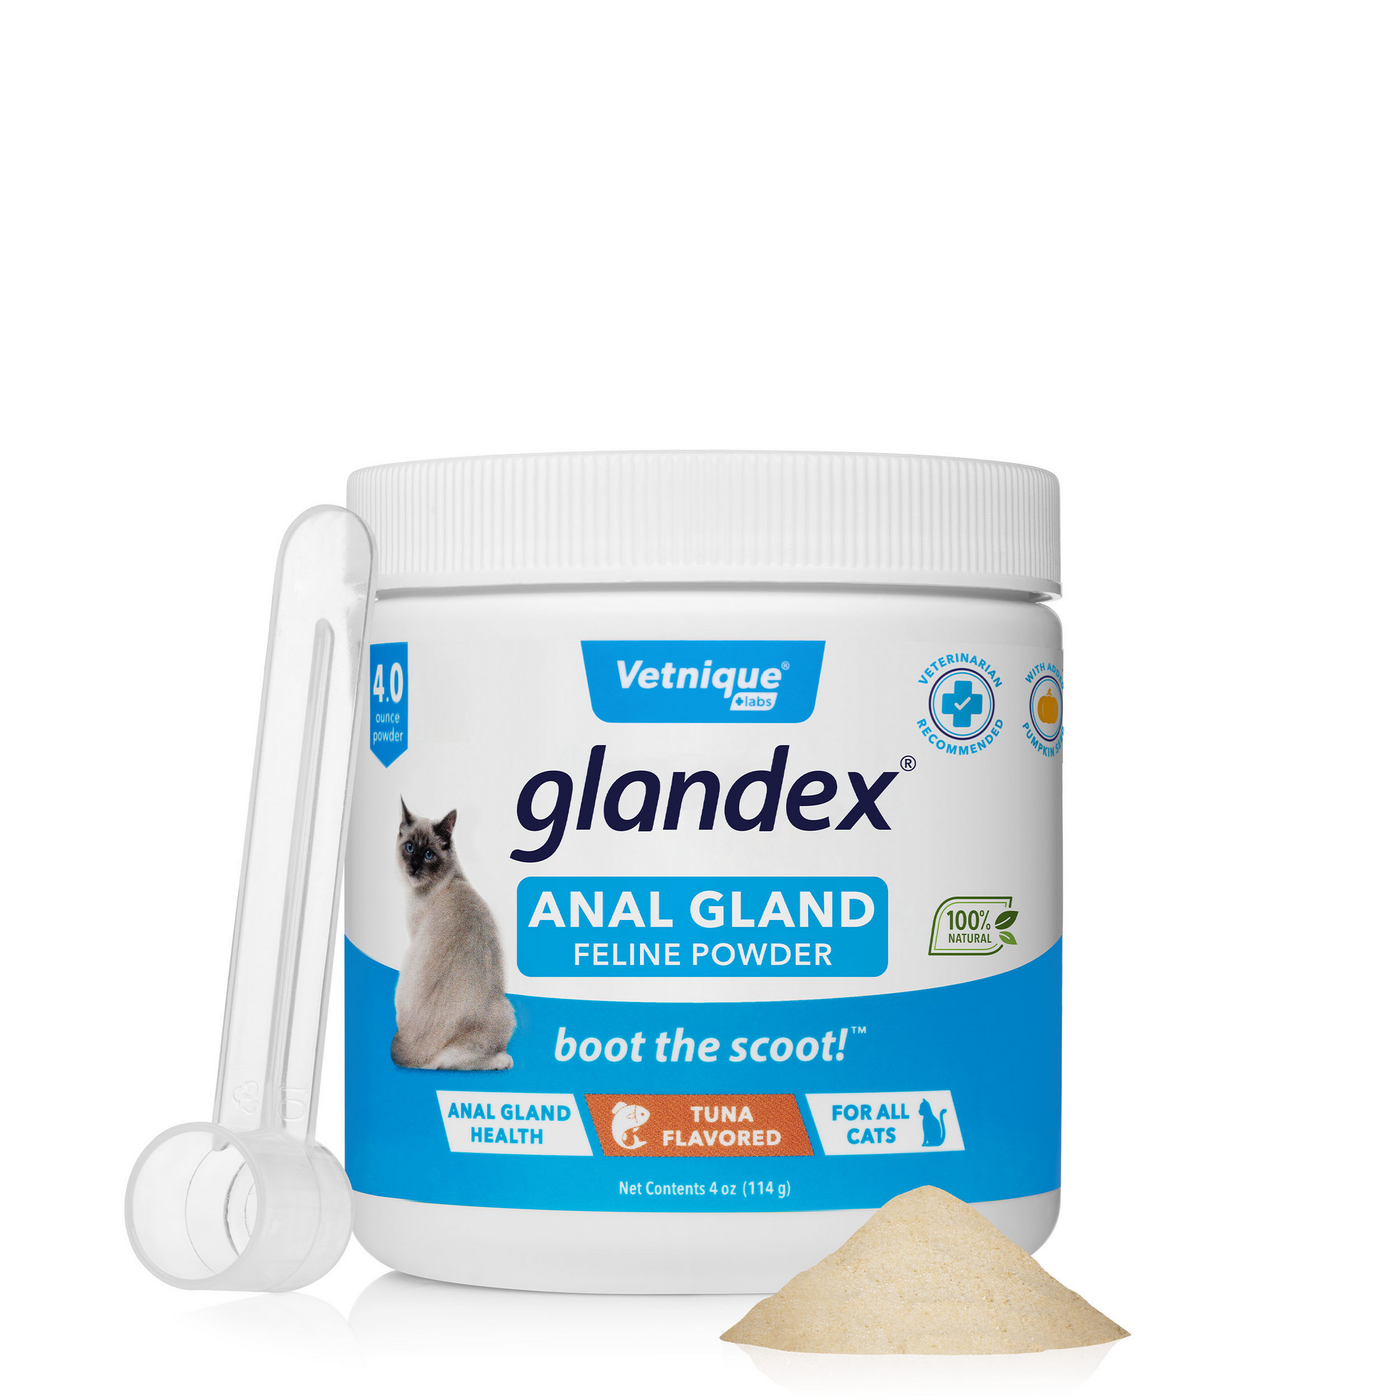 Glandex® Feline Anal Gland Supplement with Pumpkin - 4.0 oz